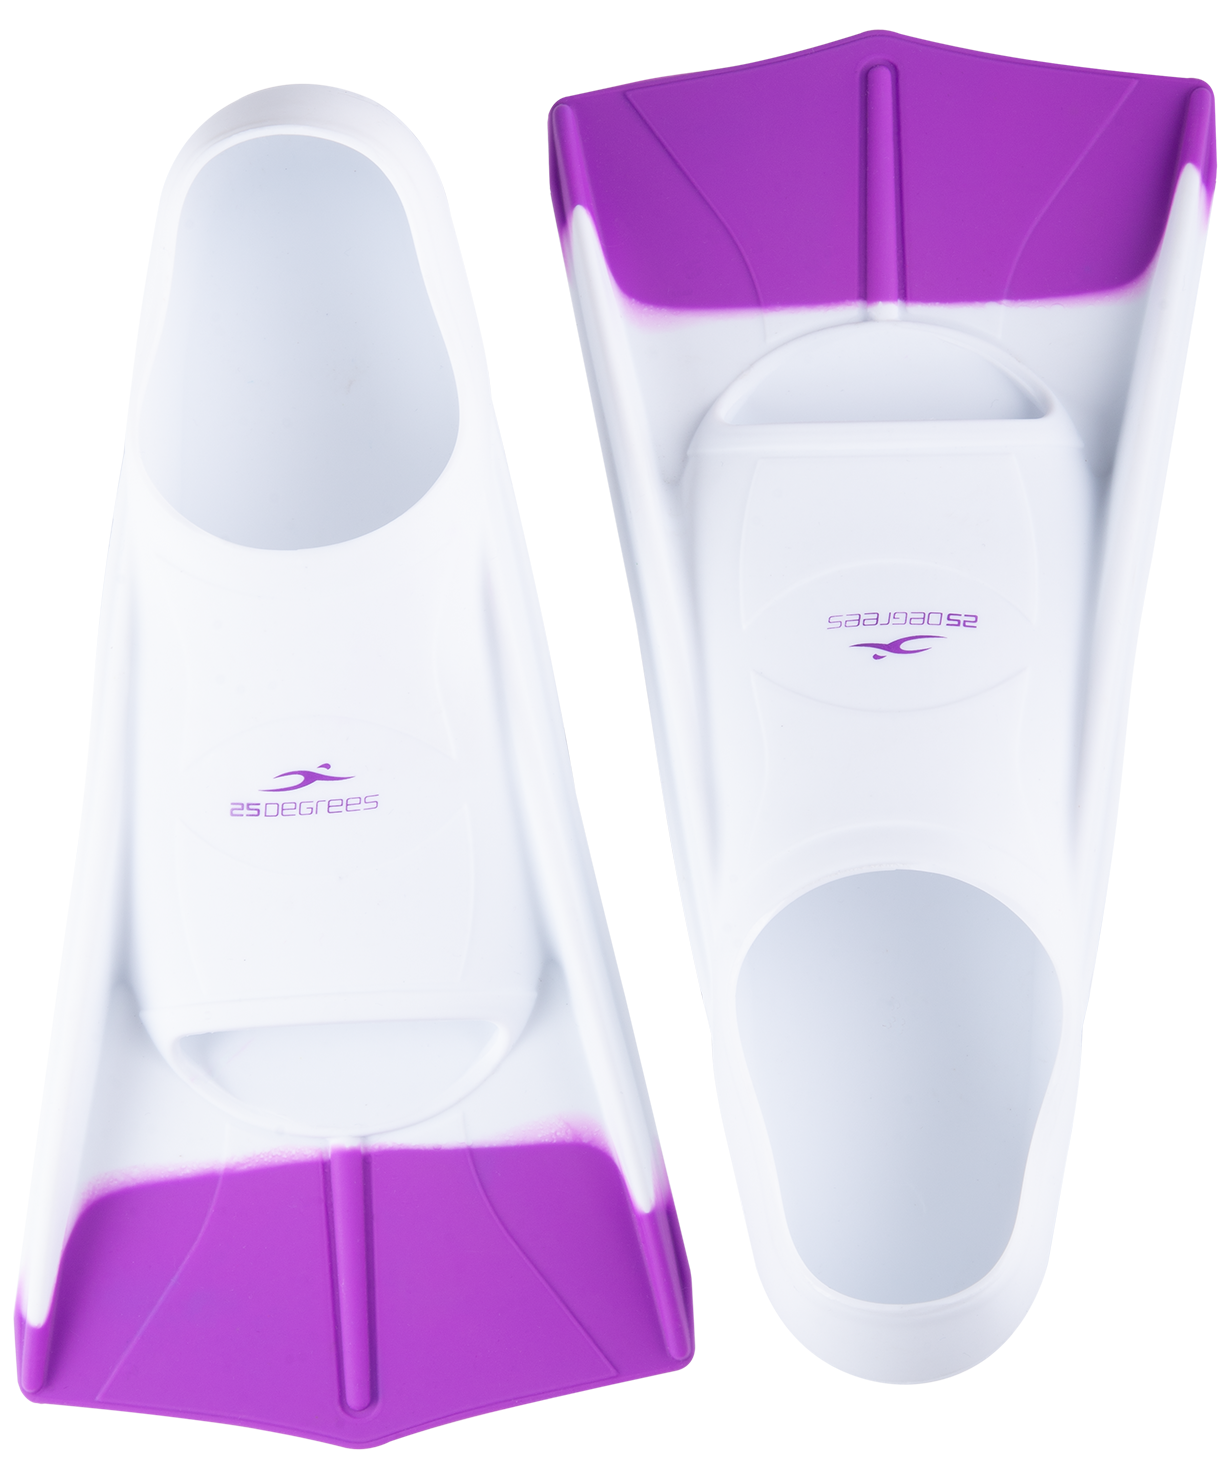 Ласты тренировочные 25degrees Pooljet White/purple, Xxs